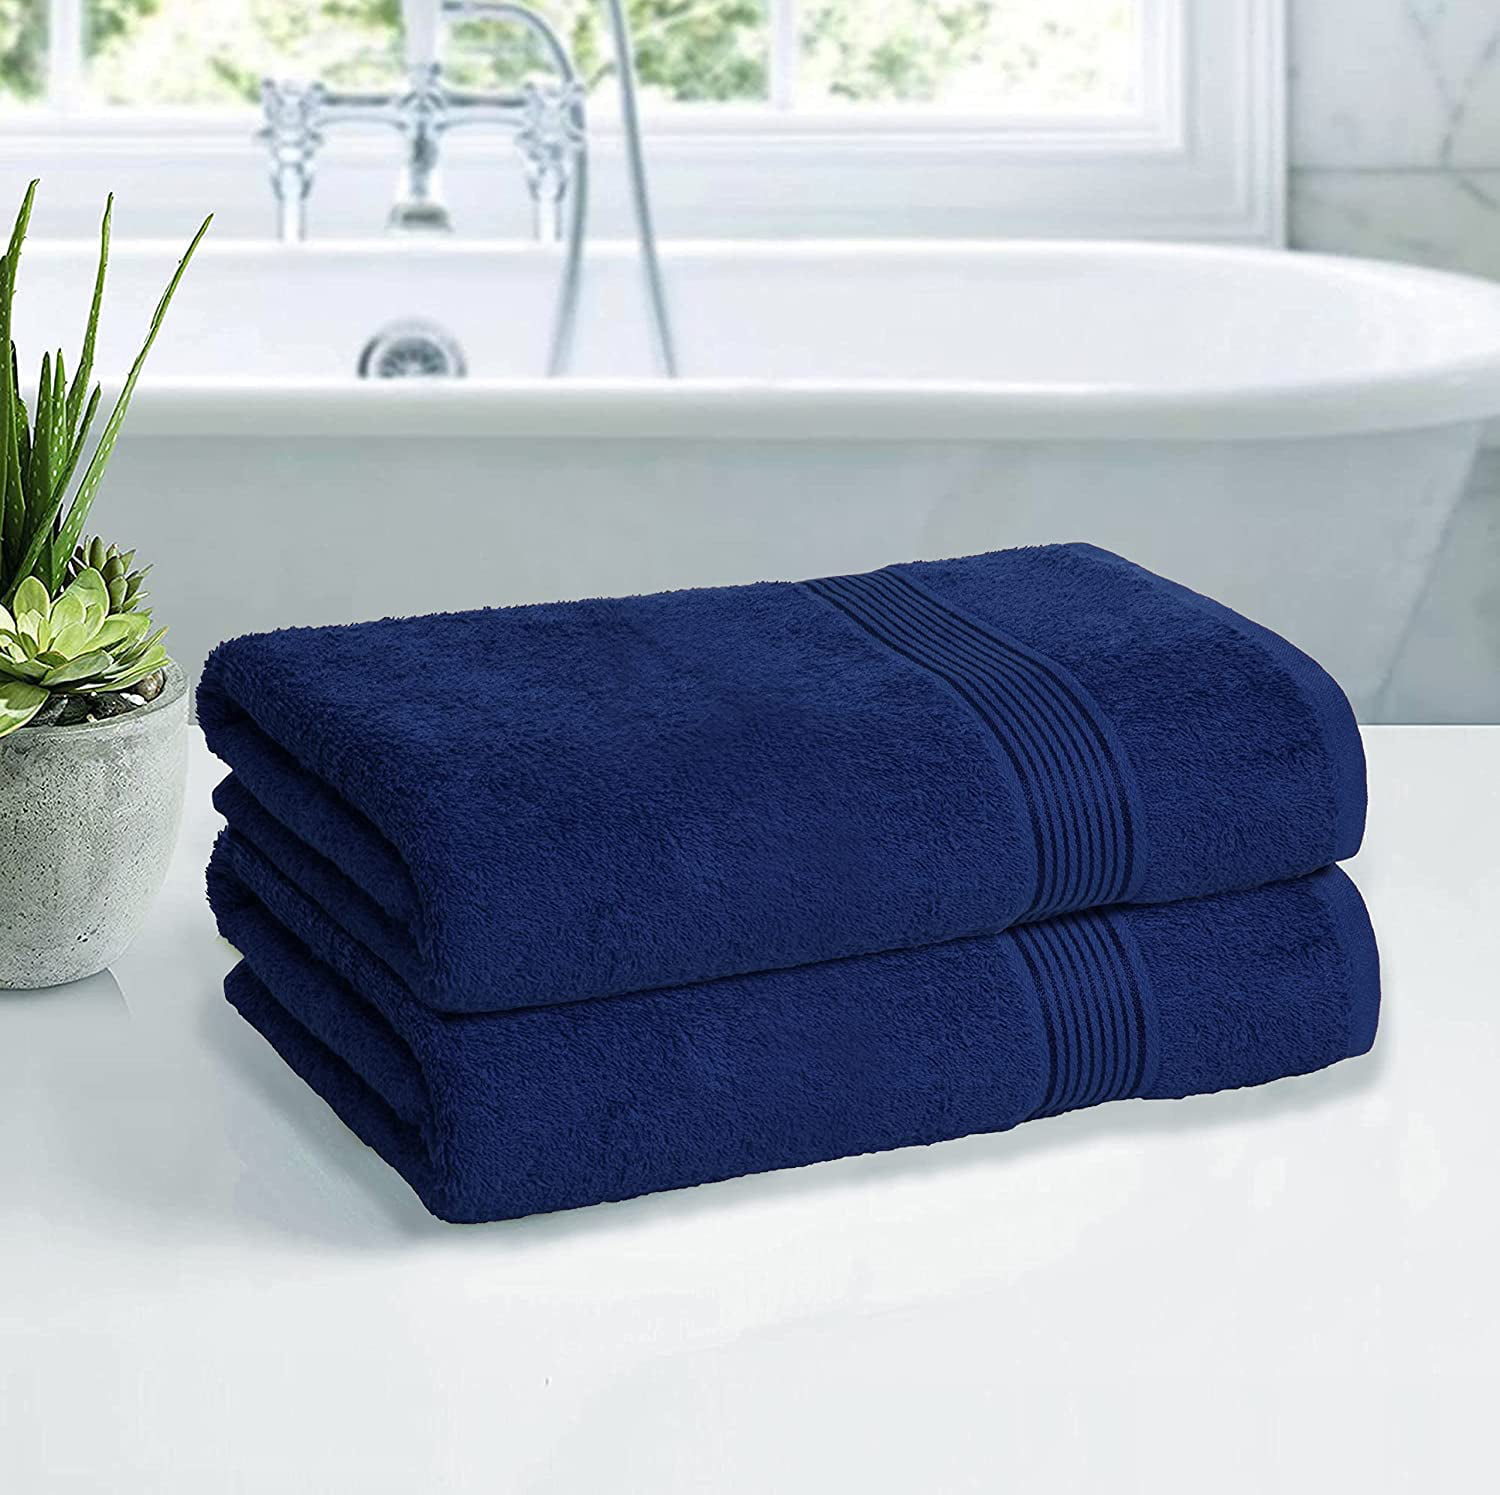 Benaep Bath Towels Premium Bath Towel Set,4-Piece Large 28″x55